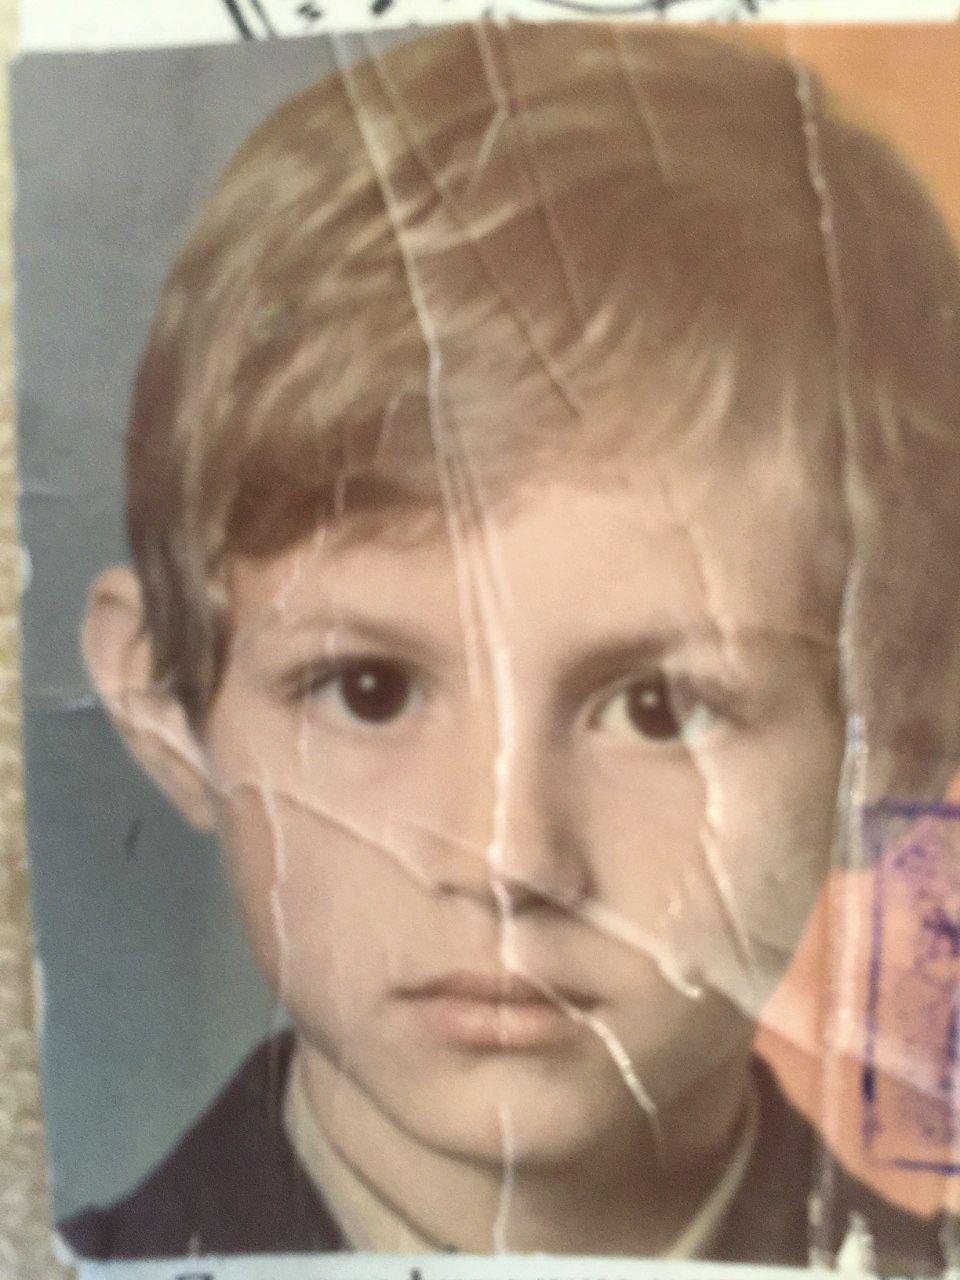 Для тех, кто не верит: сравниваем детское фото Павла Дурова и снимки его наследников от Ирины Болгар